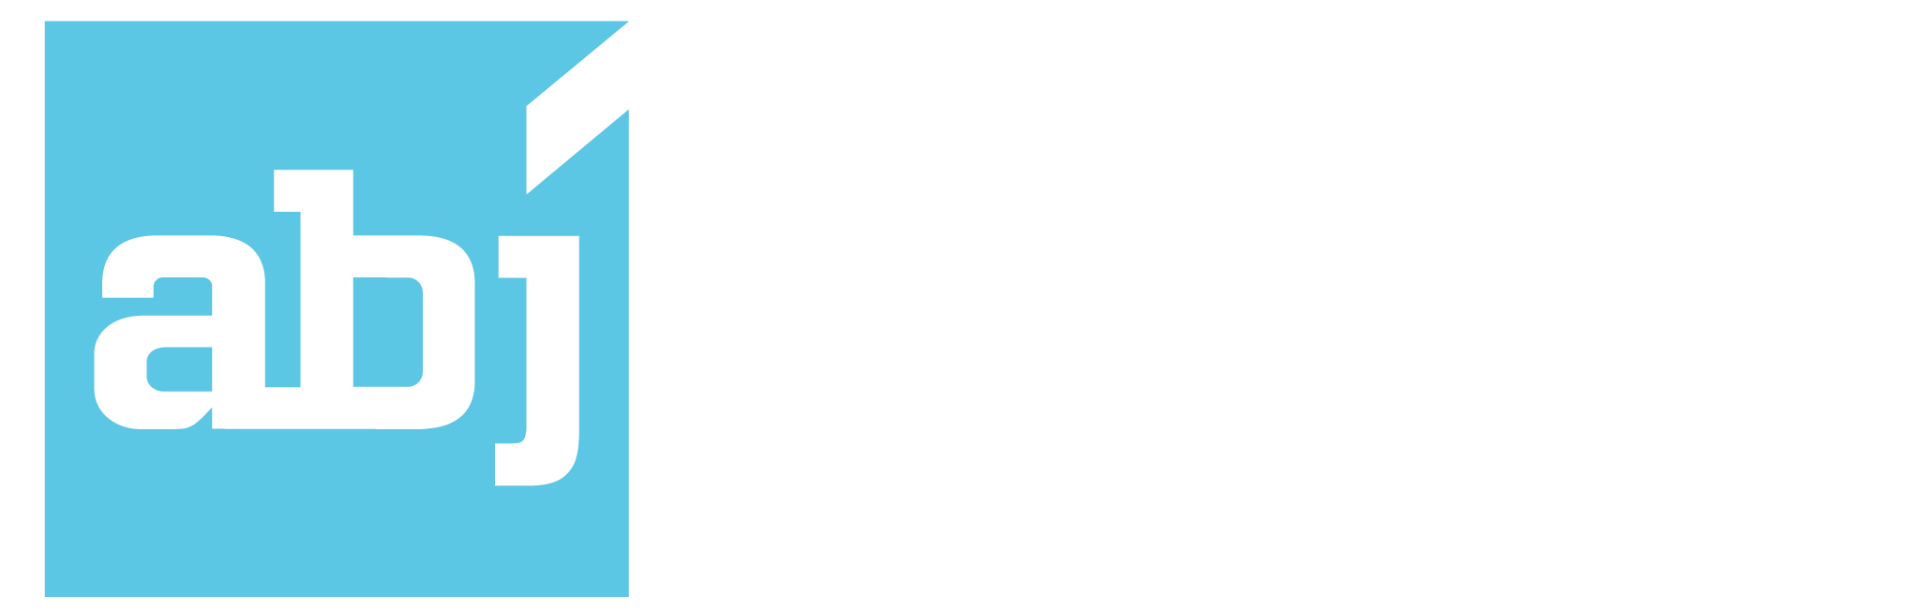 ABJ Properties Logo